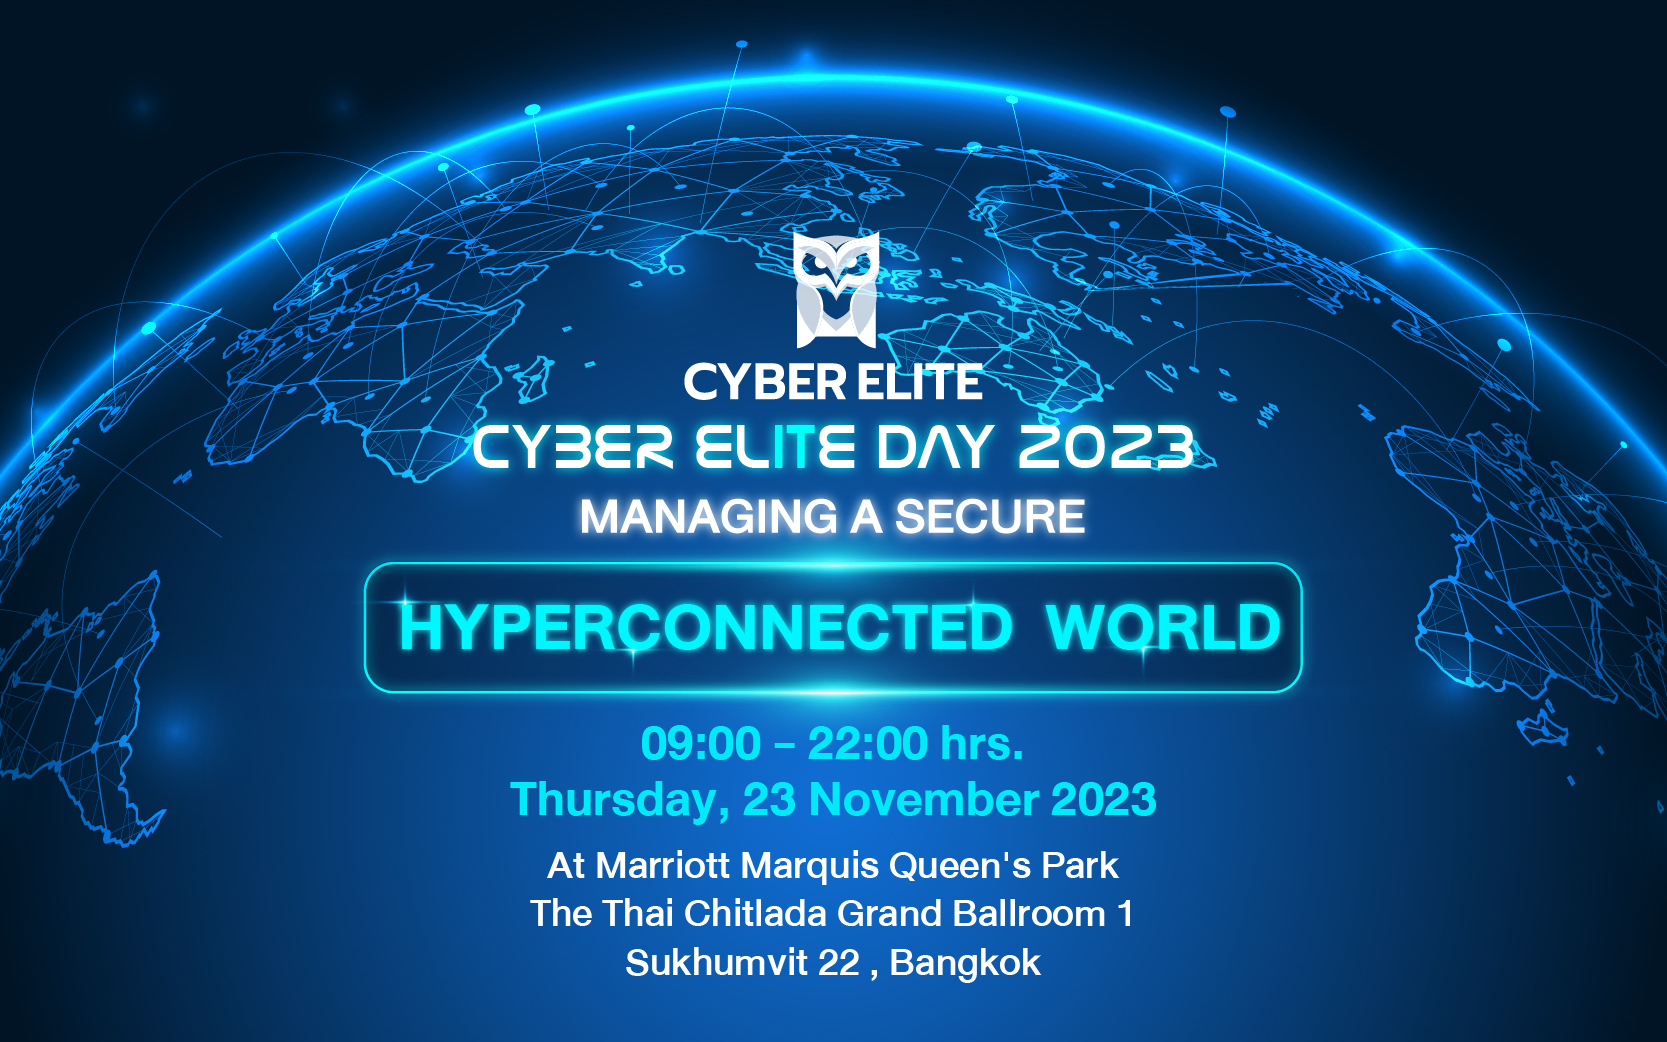 กลับมาอีกครั้งกับสัมมนาสุดยิ่งใหญ่ CYBER ELITE DAY 2023: Managing a Secure Hyperconnected World